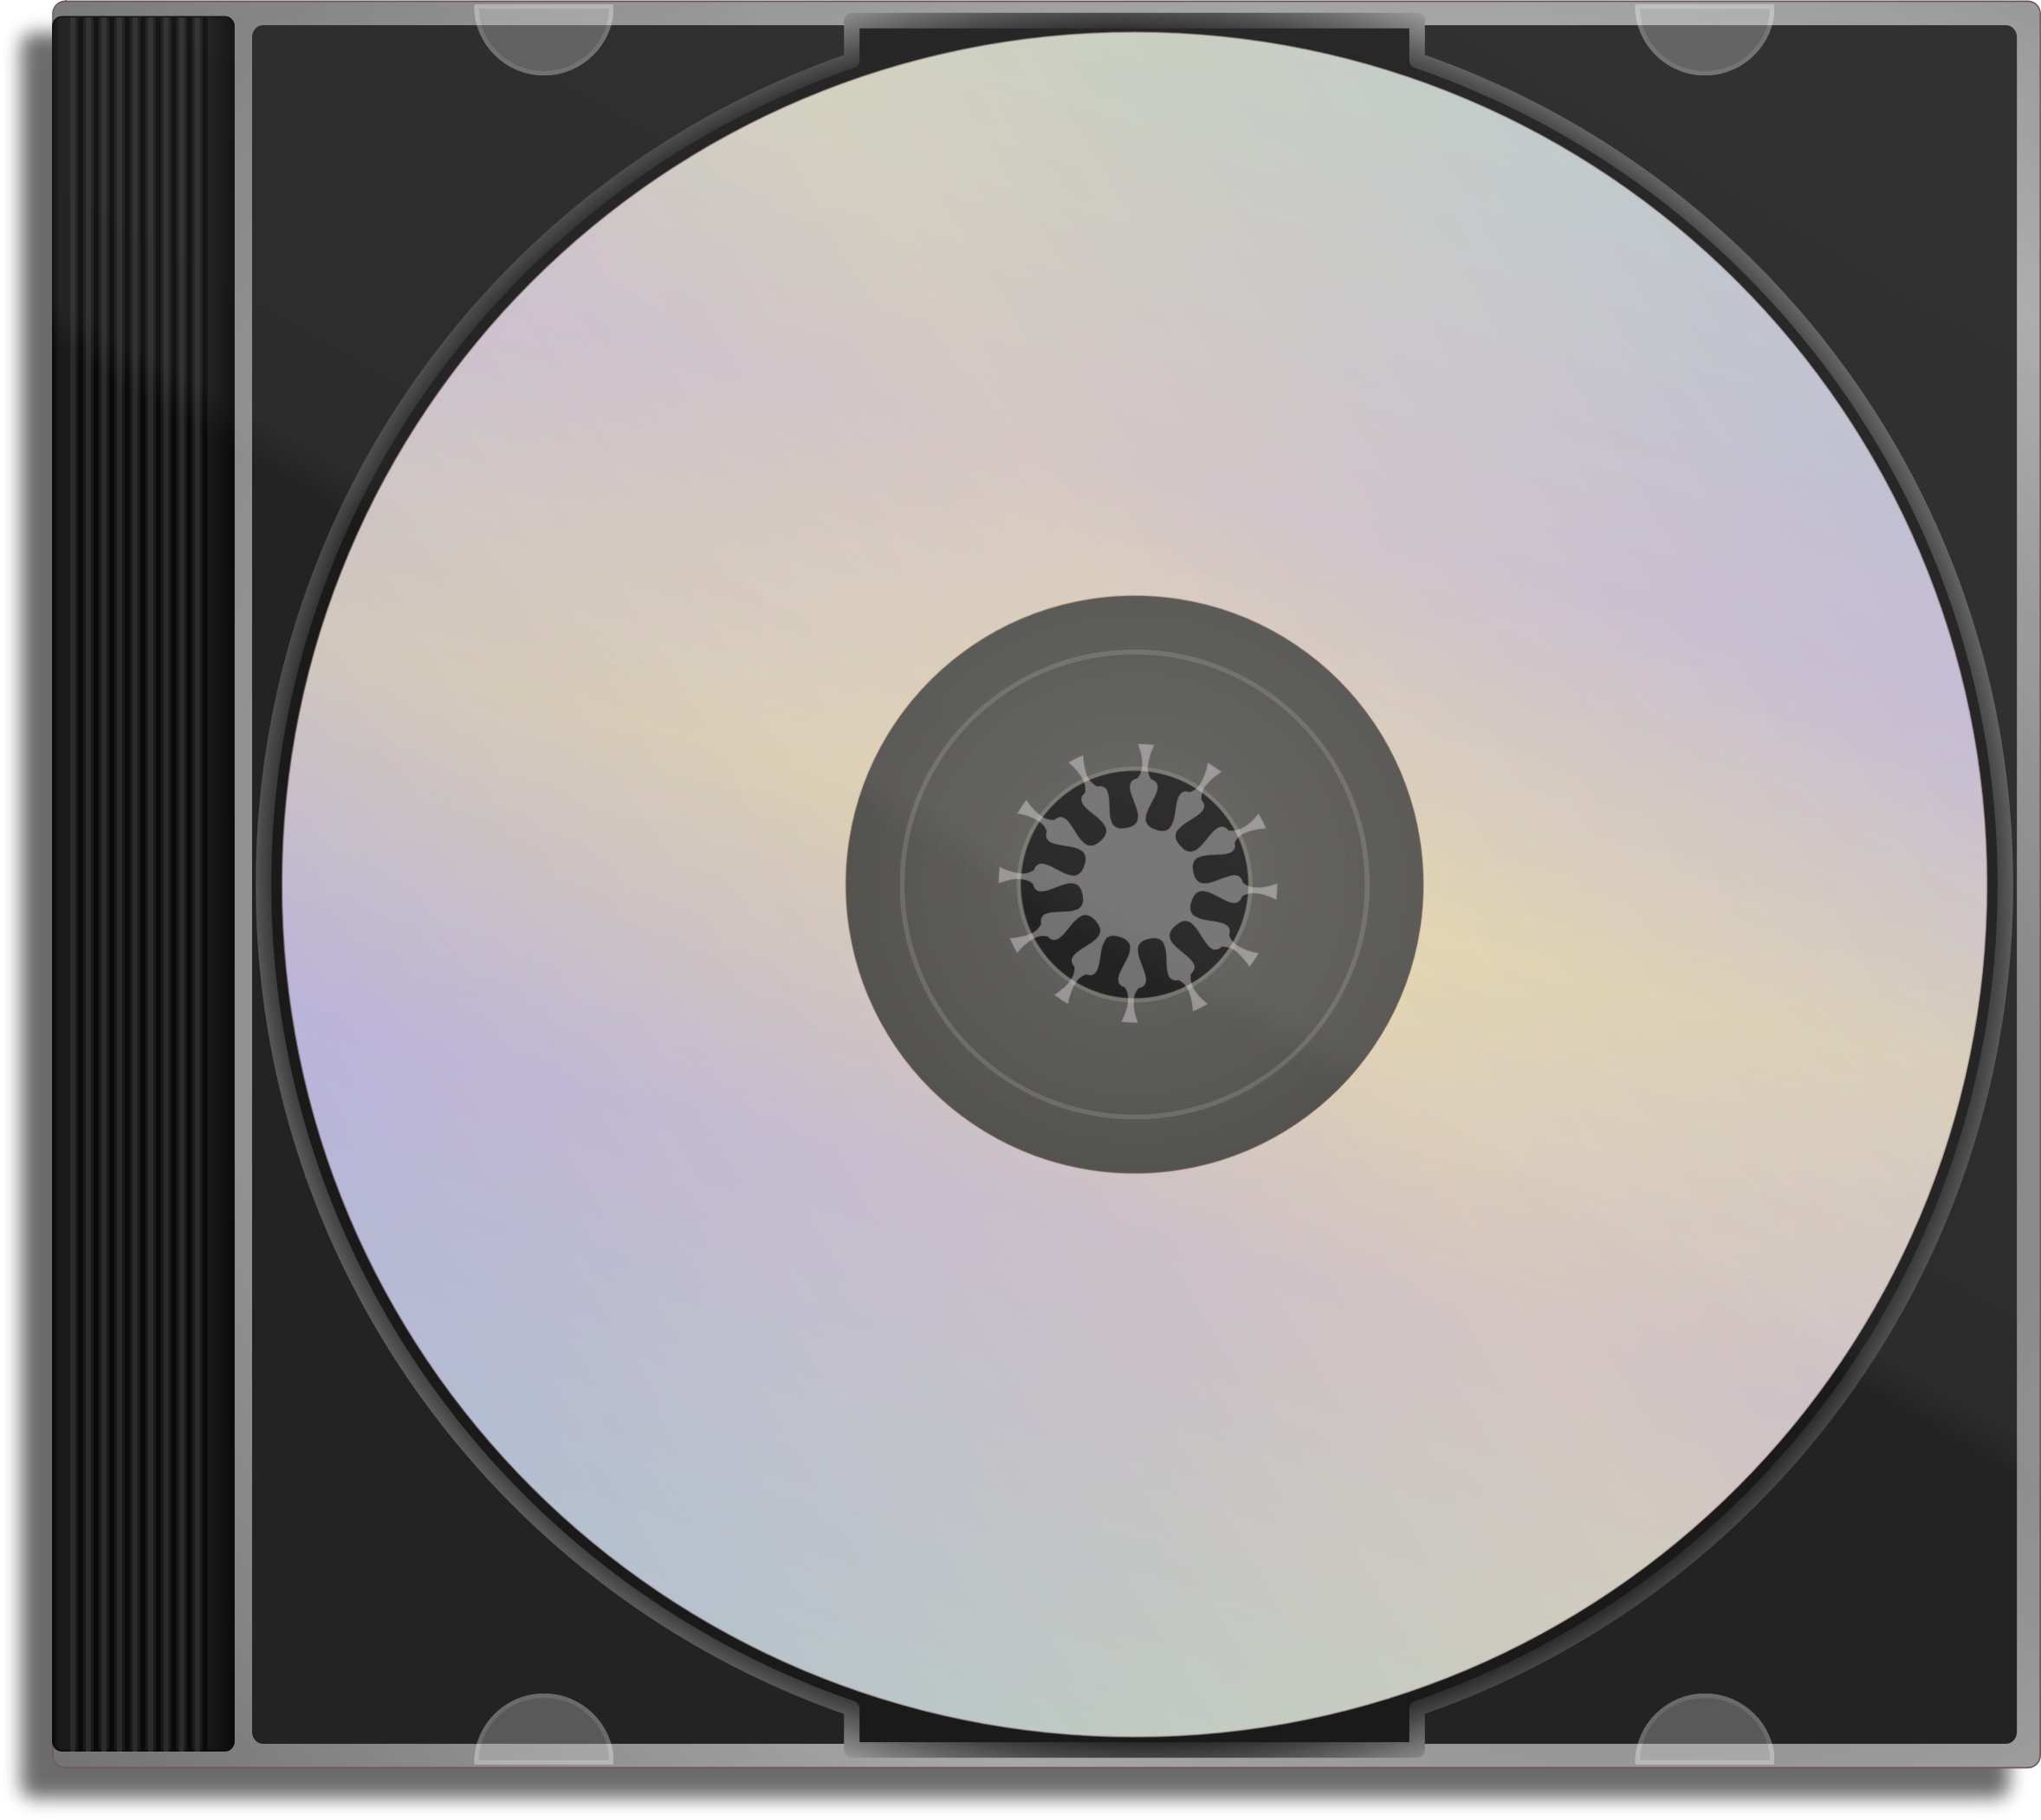 Обложка cd диска. CD - Compact Disk (компакт диск). CD-ROM (Compact Disk ROM). 1 СД диск. CD диск в упаковке.